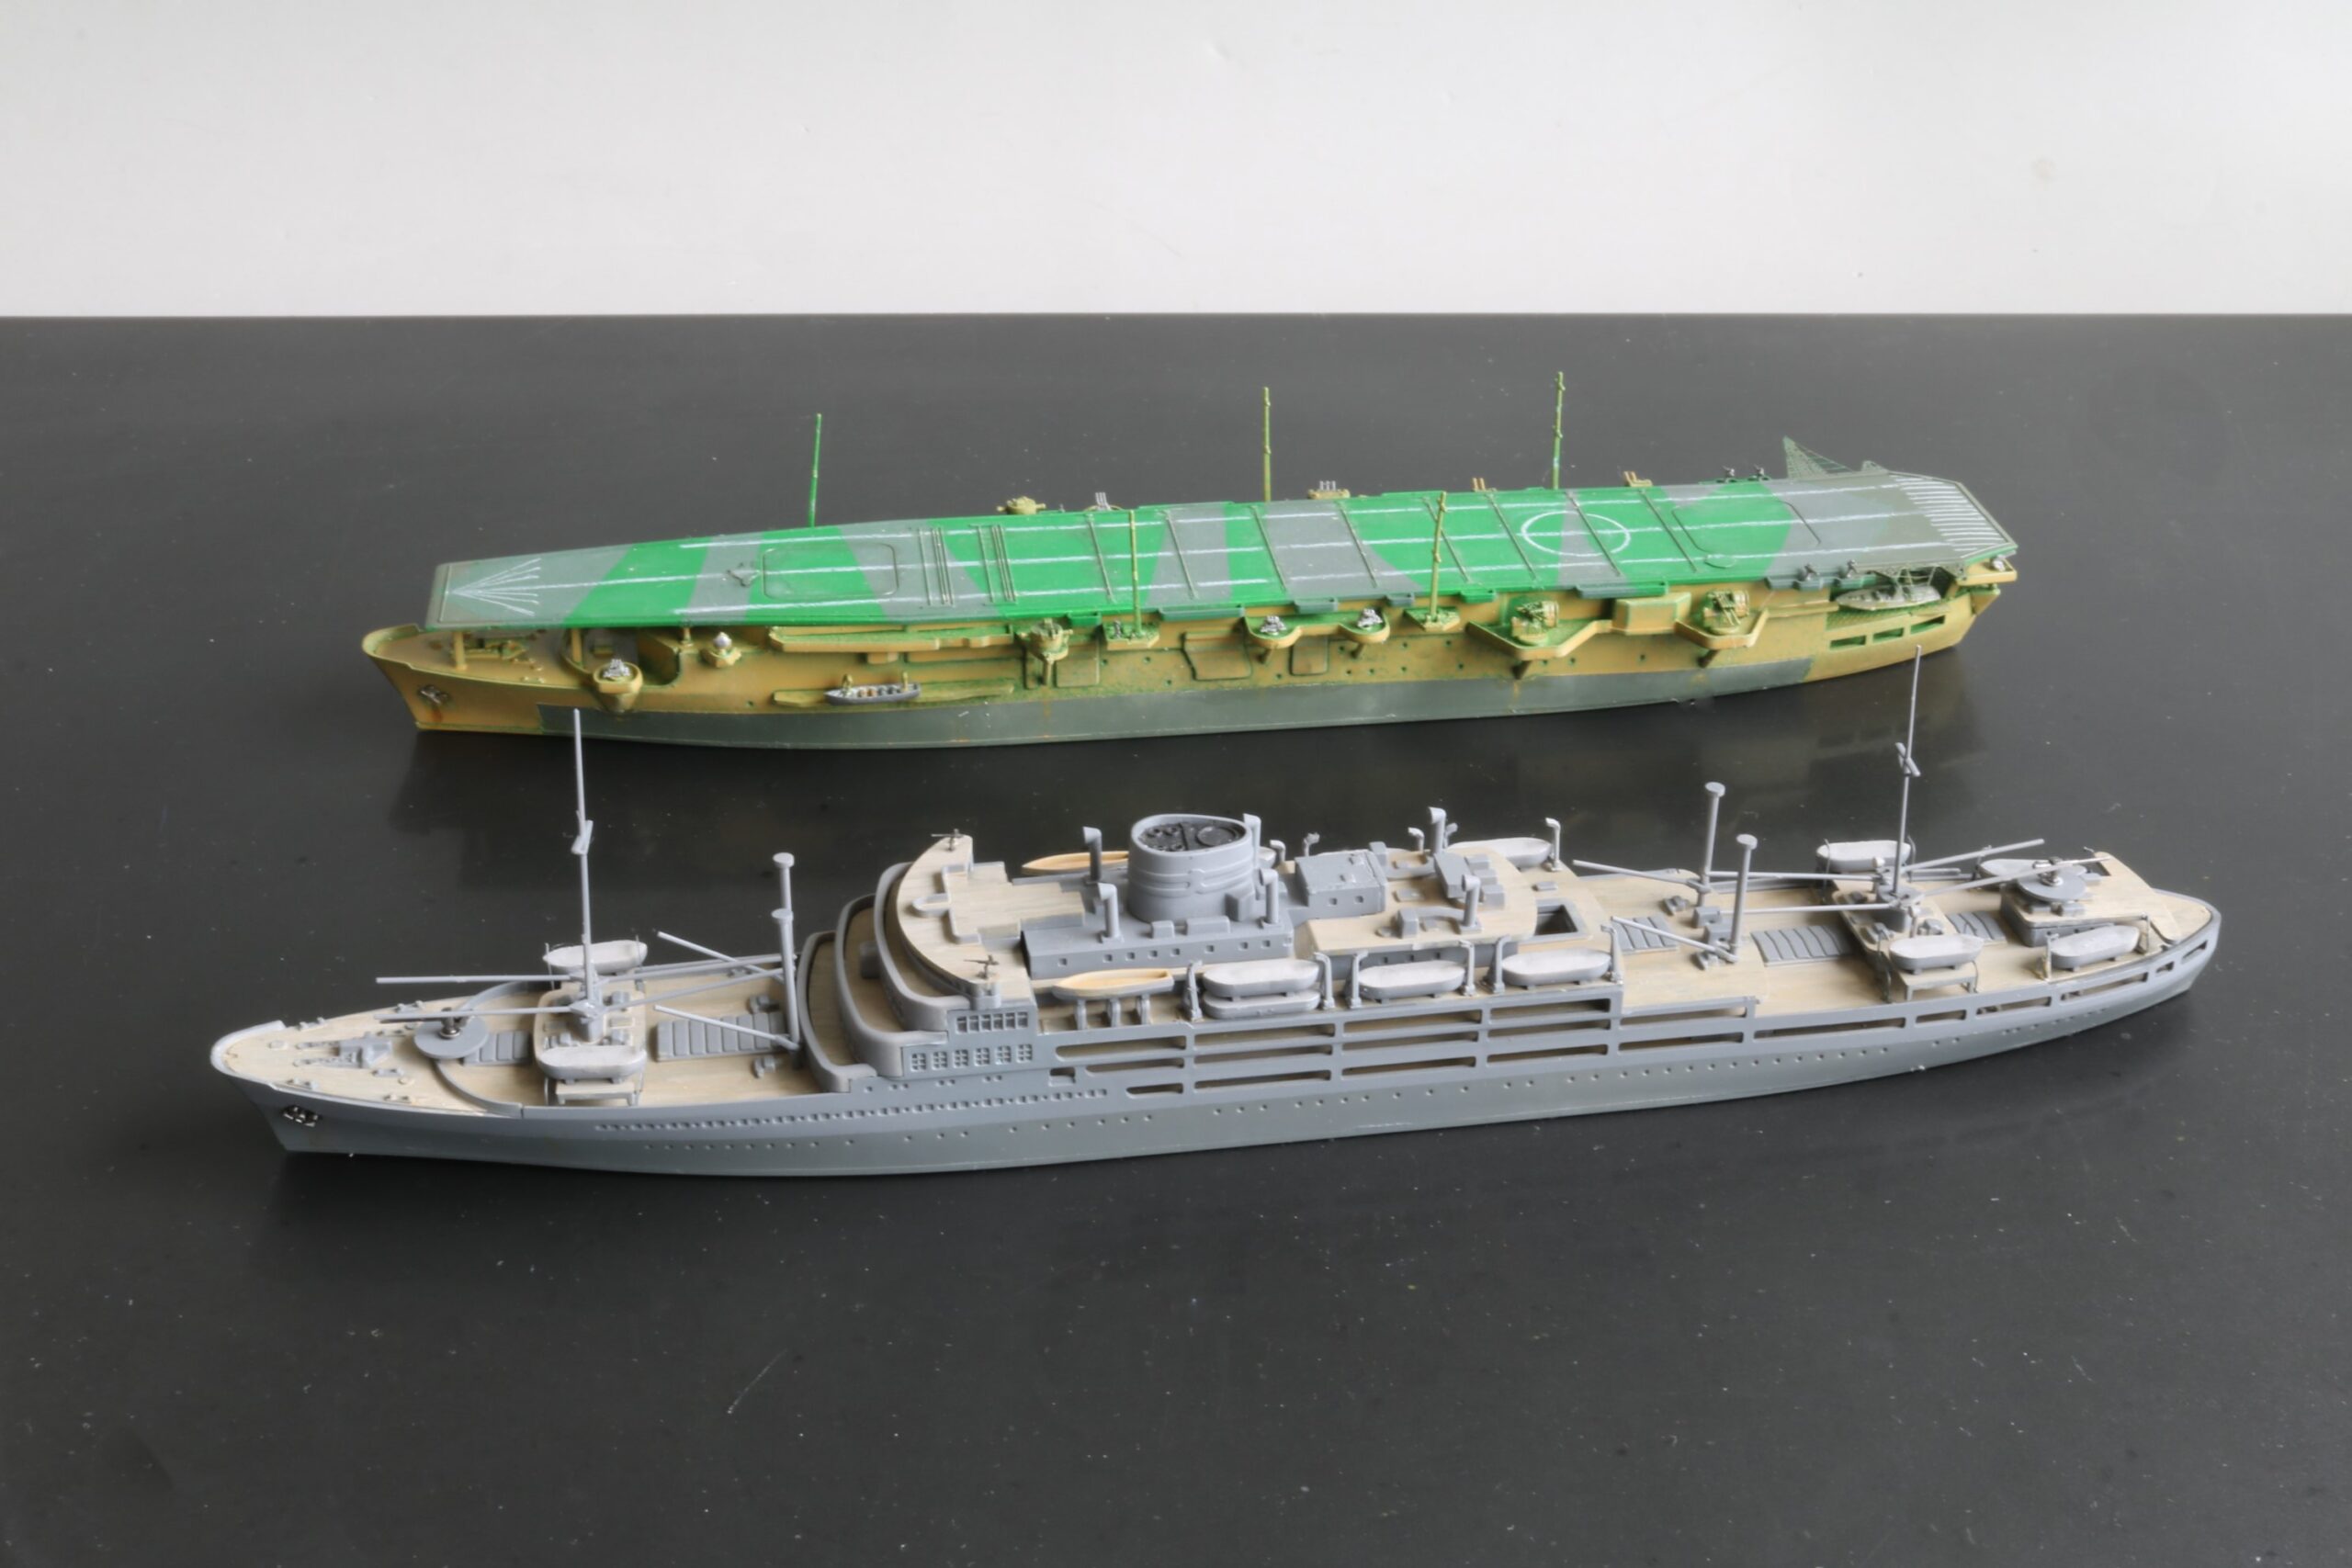 艦艇模型ビフォアーアフター 輸送船あるぜんちな丸 航空母艦海鷹 model ships before-after Cargo Ship Aruzenchina-maru Air craft Carrier Kaiyo